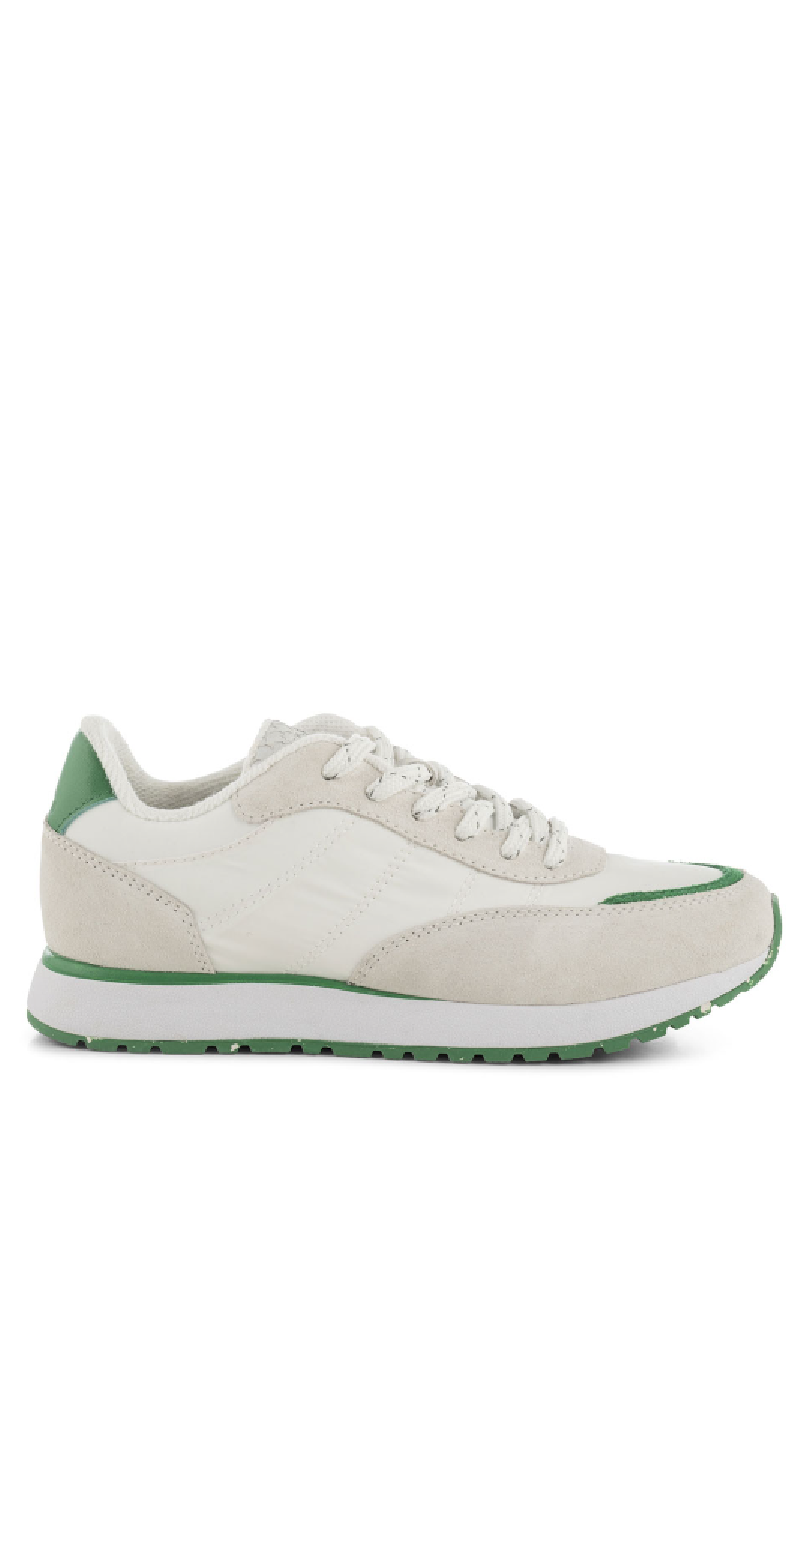 Sneakers i hvid og grøn